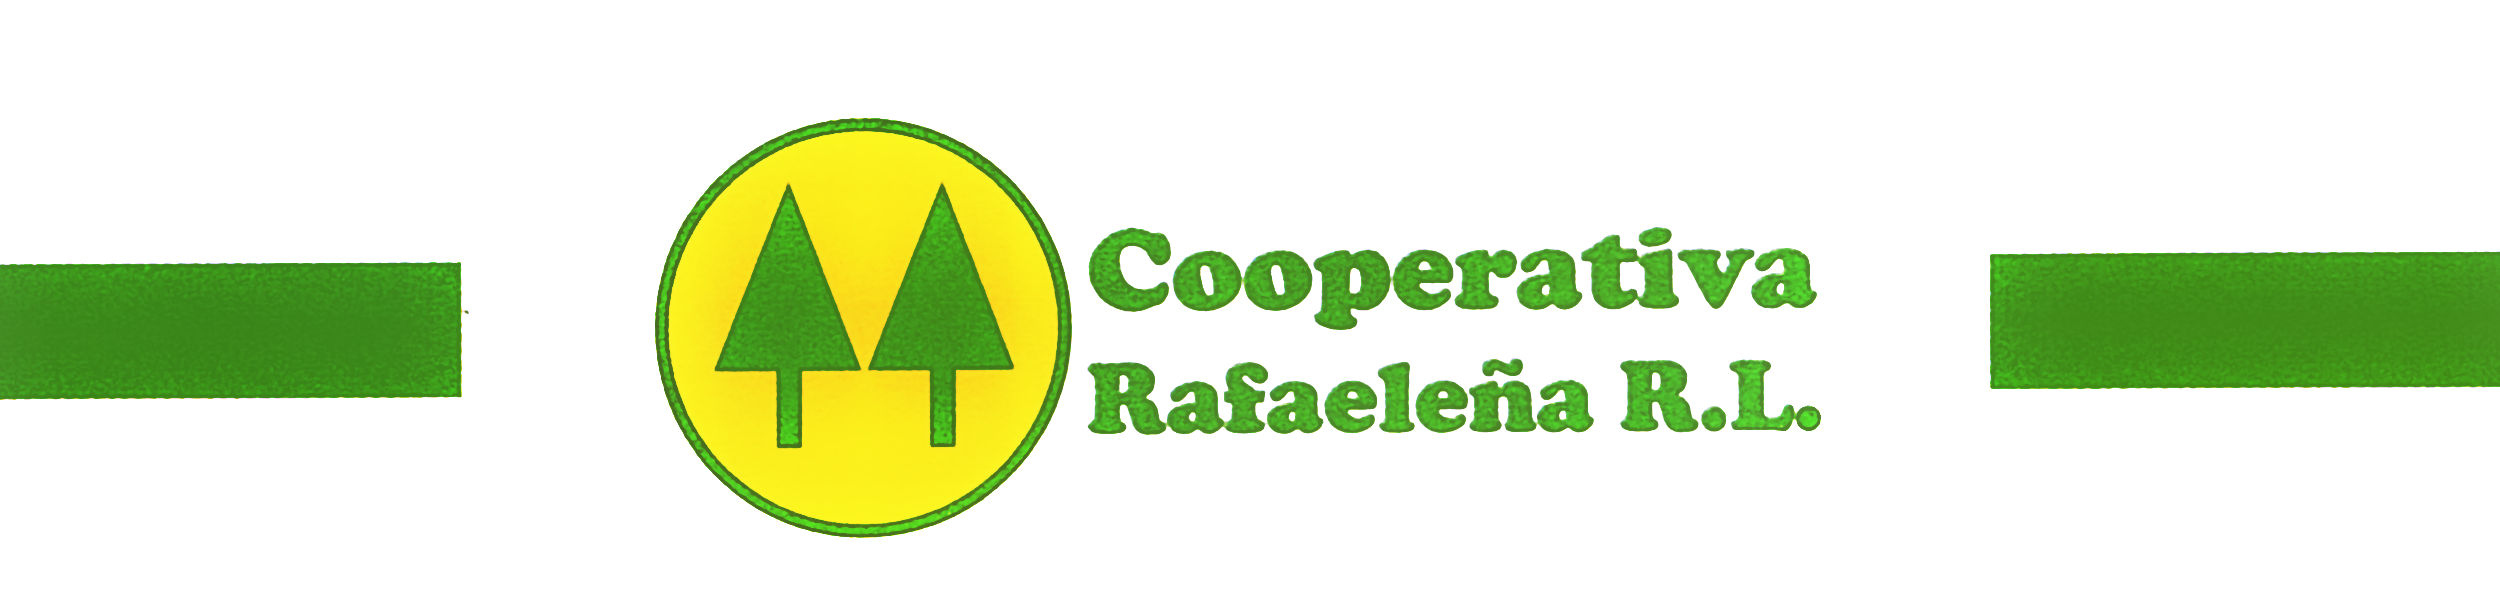 Cooperativa Integral de Ahorro y Crédito Rafaeleña R.L.